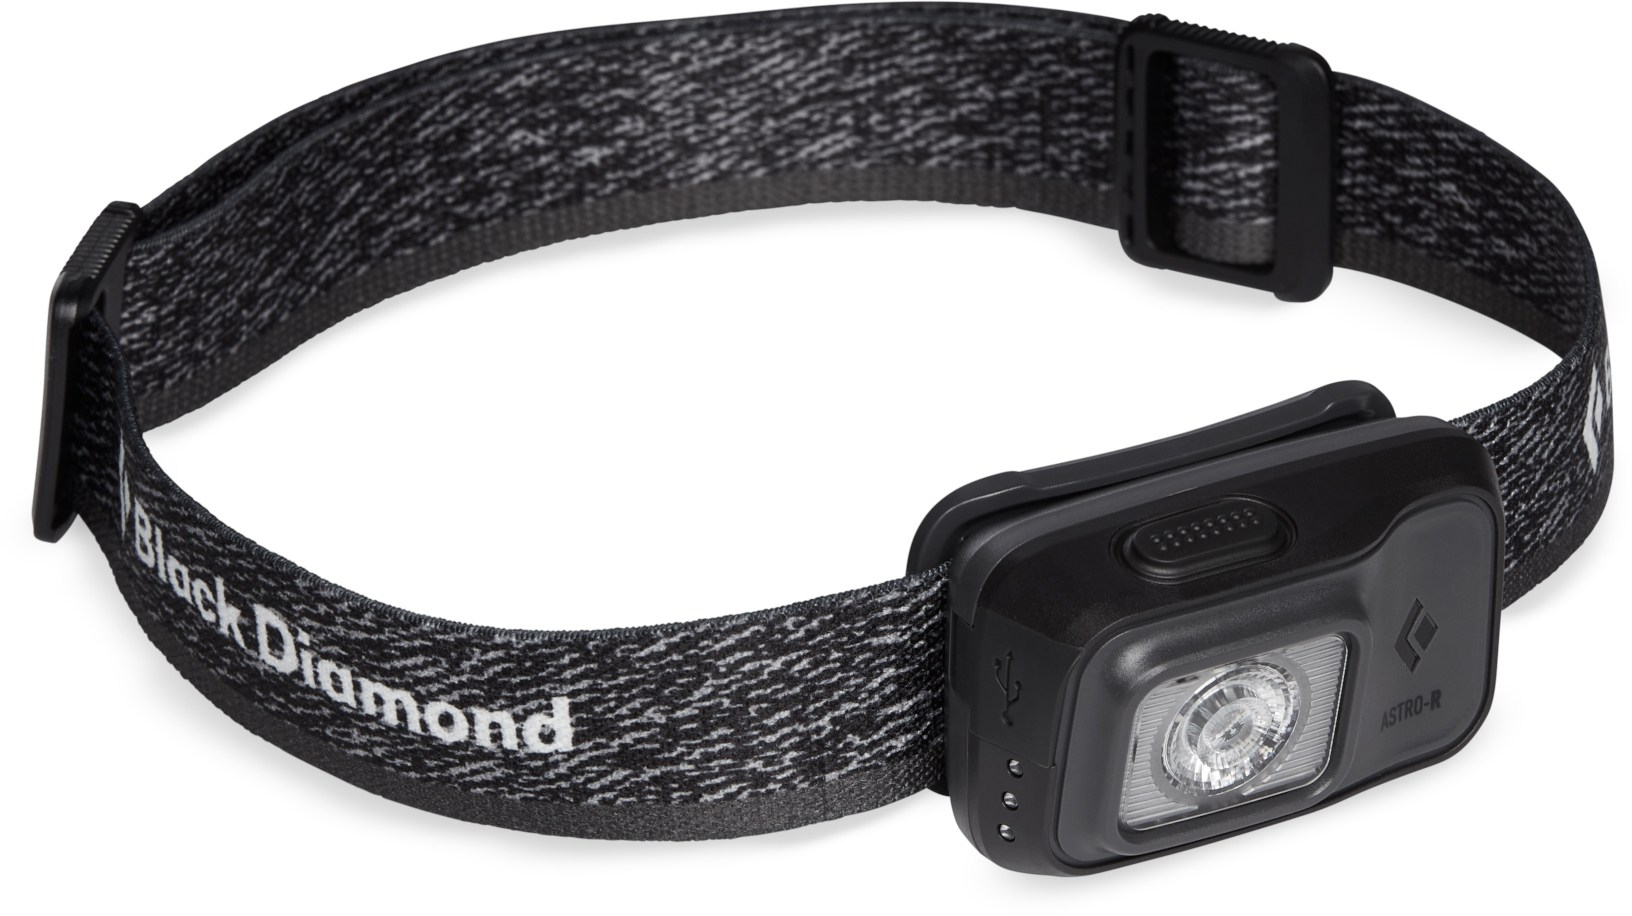 Налобный фонарь Astro 300-R Black Diamond, серый 1000 лм м супер xhp90 самый мощный светодиодный налобный фонарь наружный головной фонарь usb перезаряжаемый налобный фонарь для рыбалки